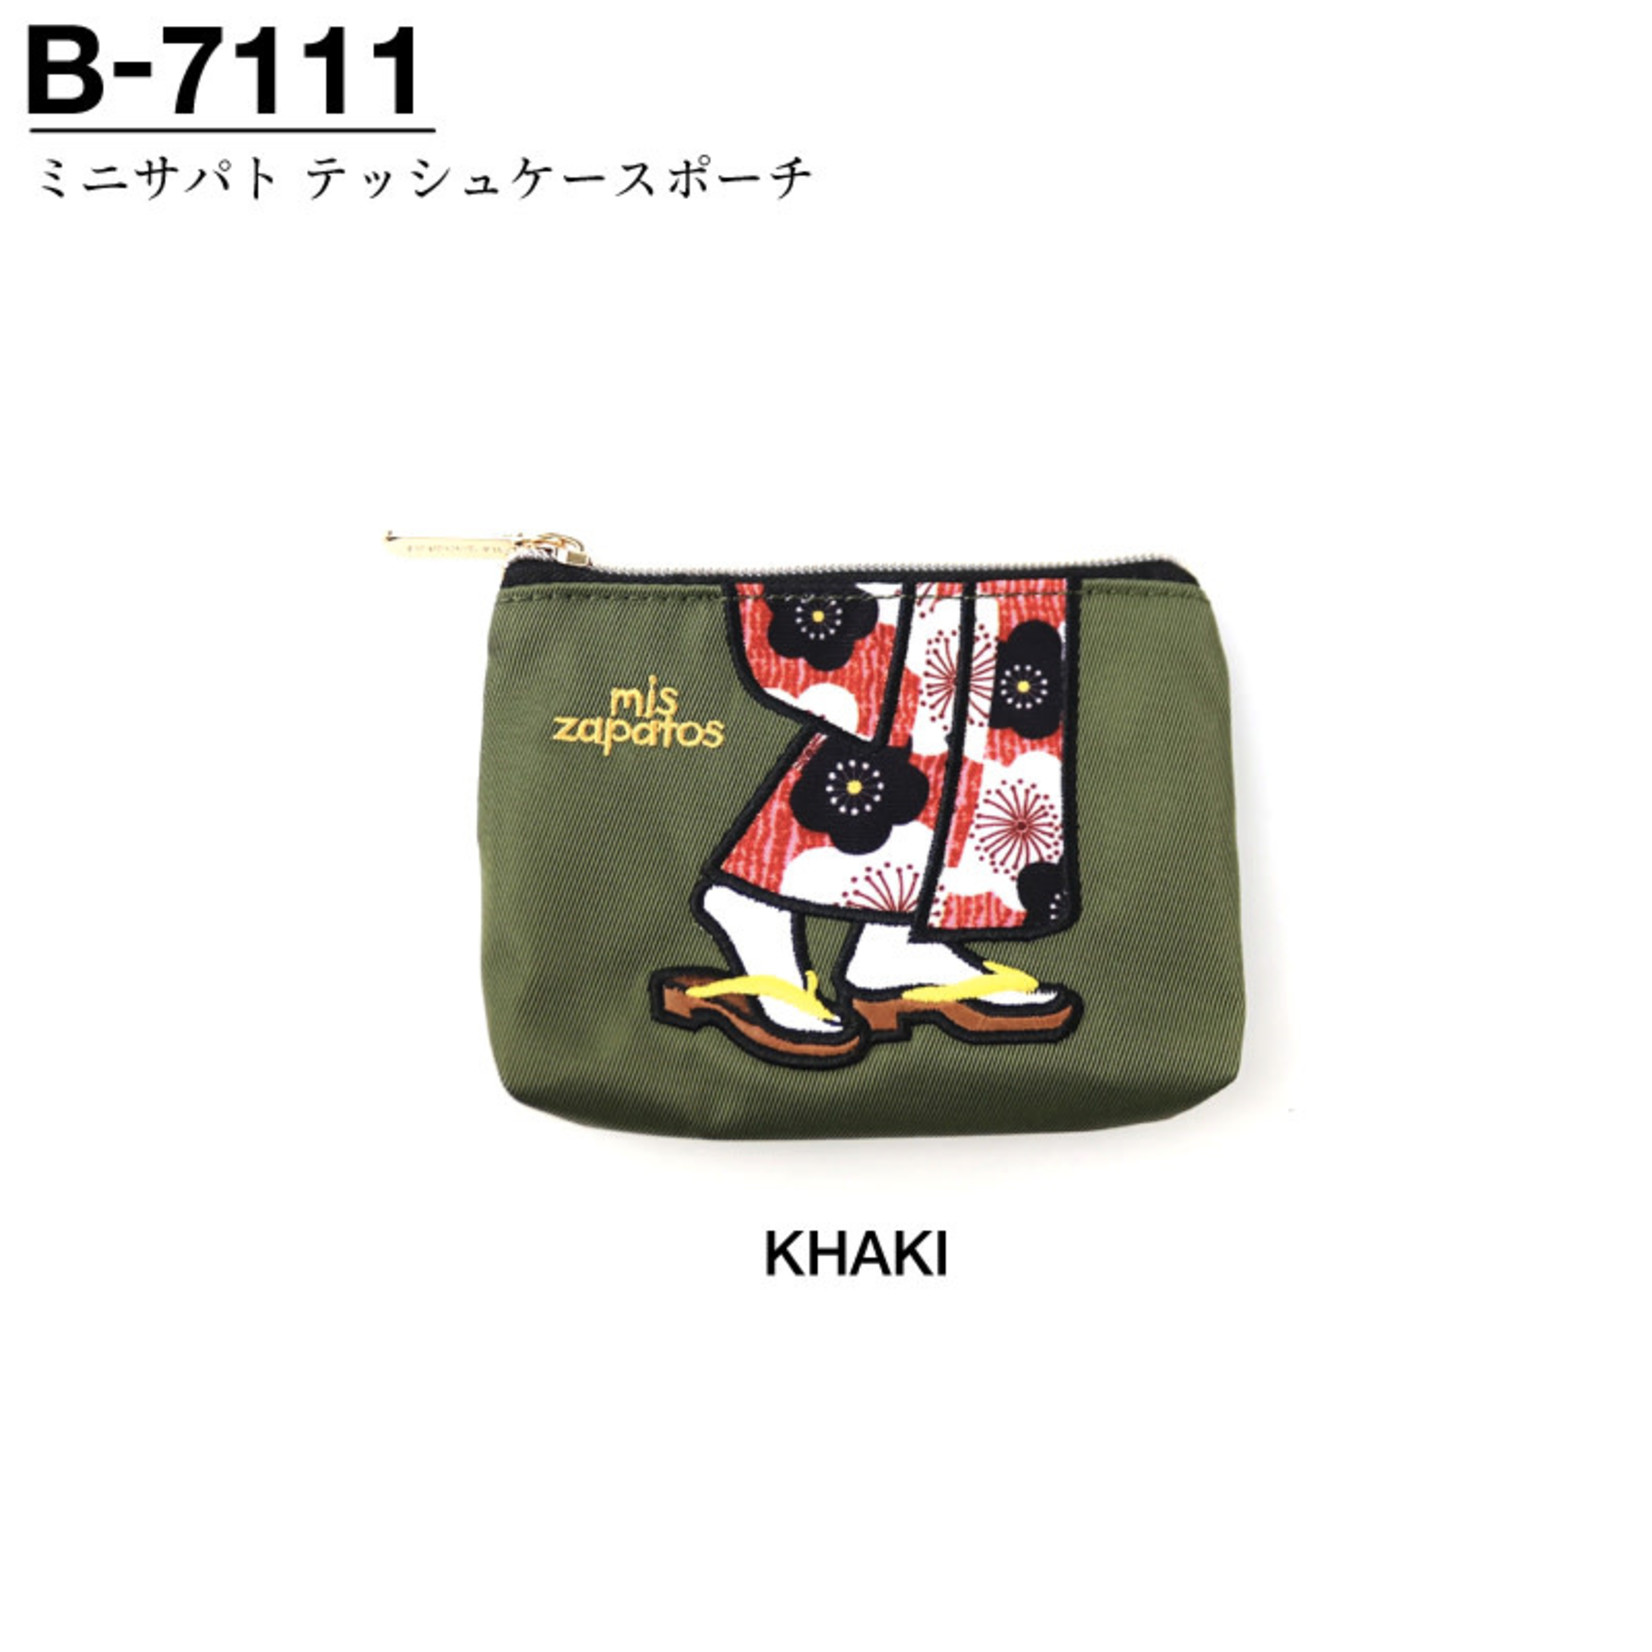 Pouch - Mini  Zapatos Kimono Tissue  Case - B-7111